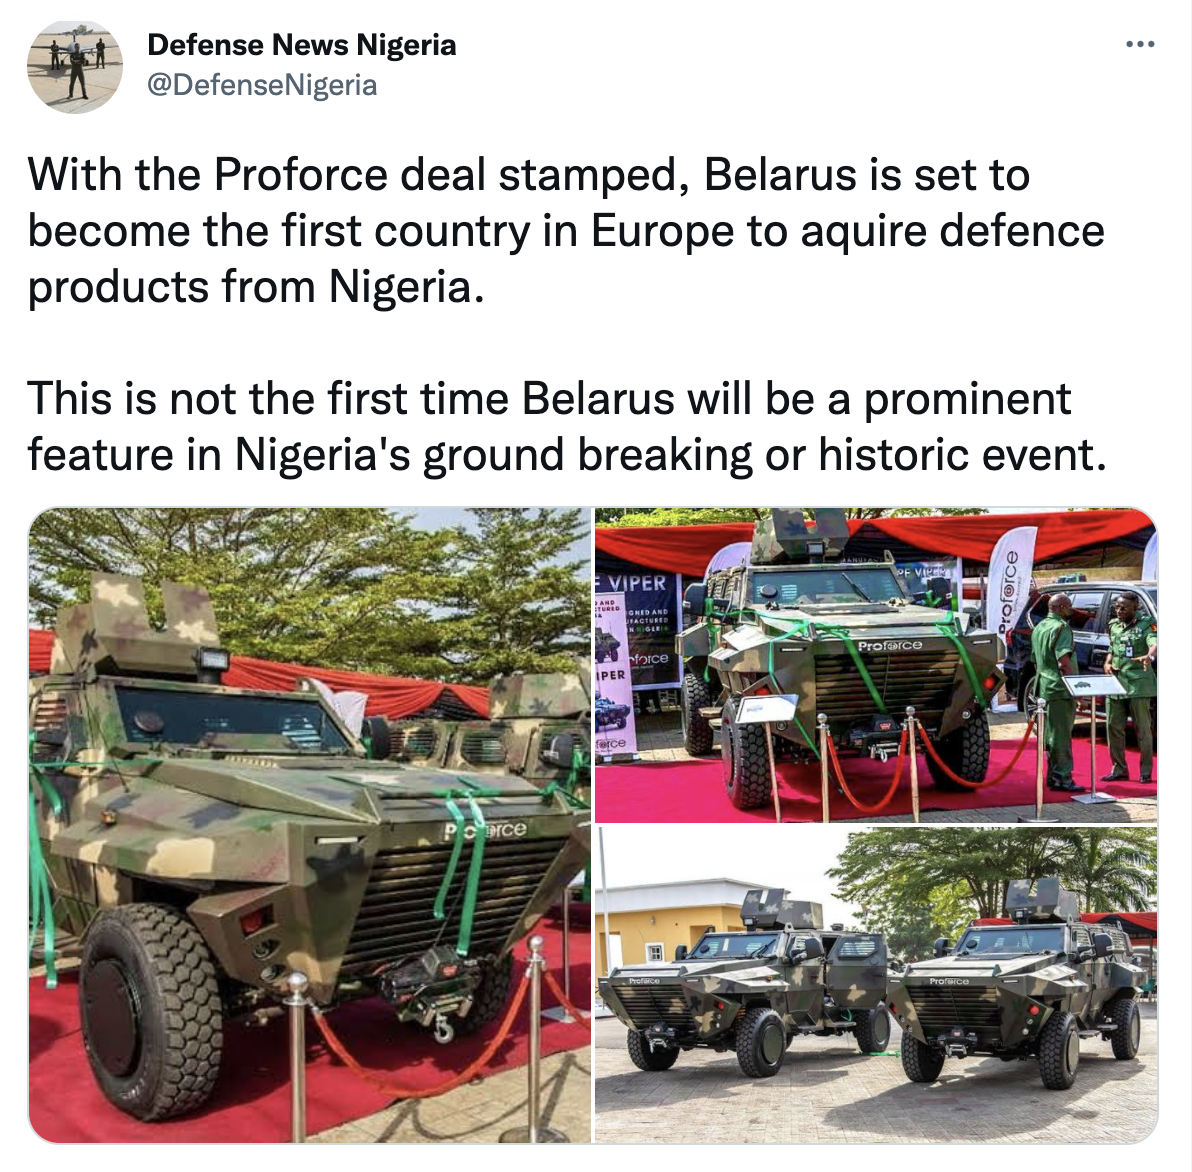 СМИ: Беларусь станет первой страной в Европе, которая покупает оборонную продукцию в Нигерии